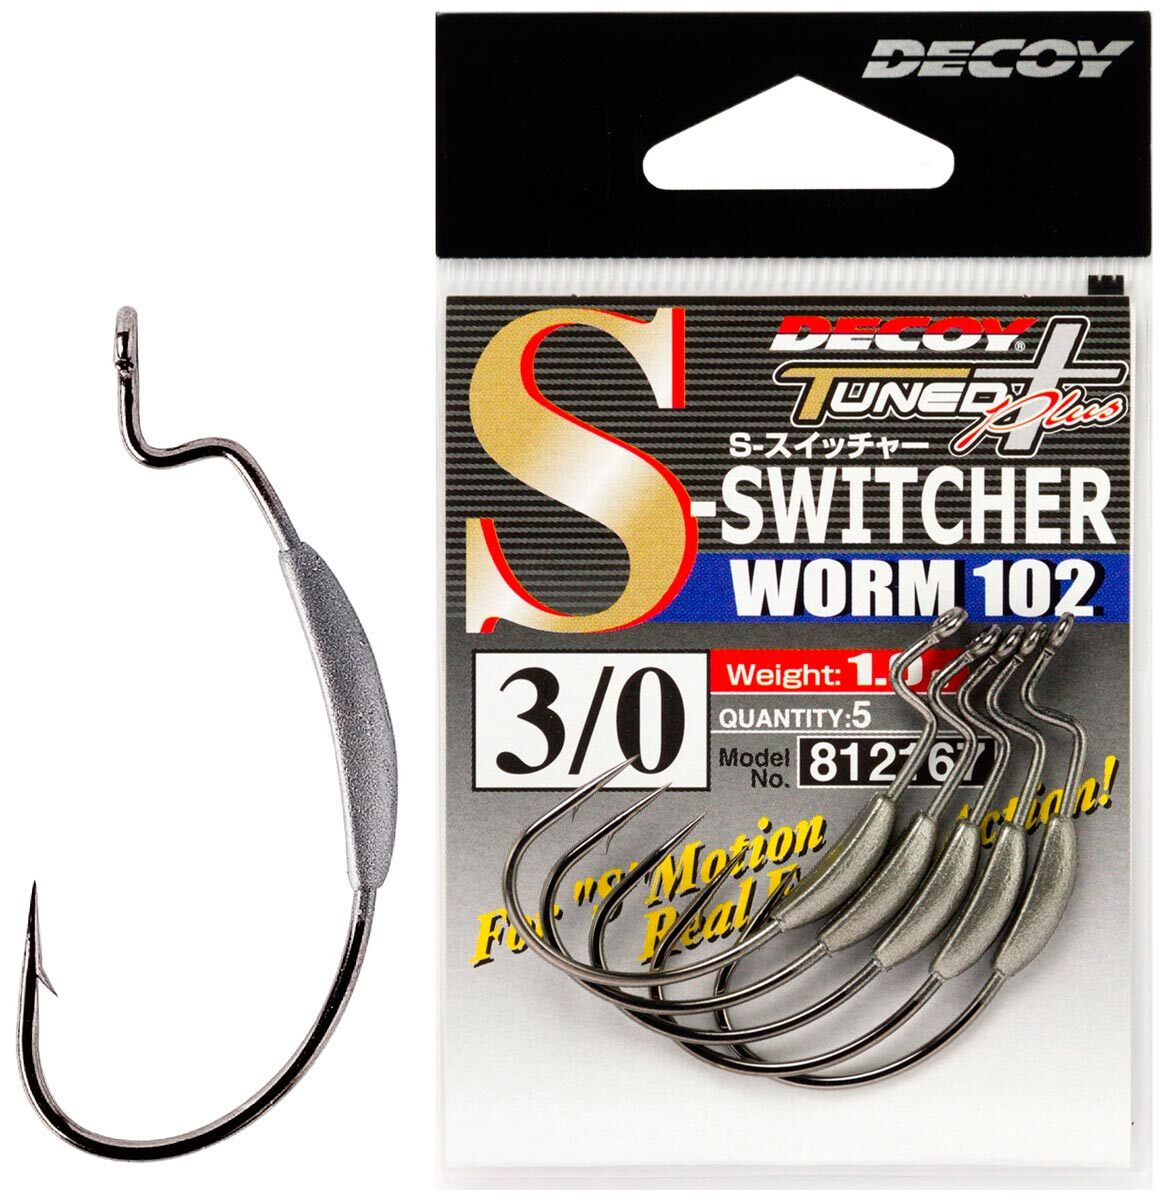 Гачок Decoy S-Switcher Worm 102 №2/0